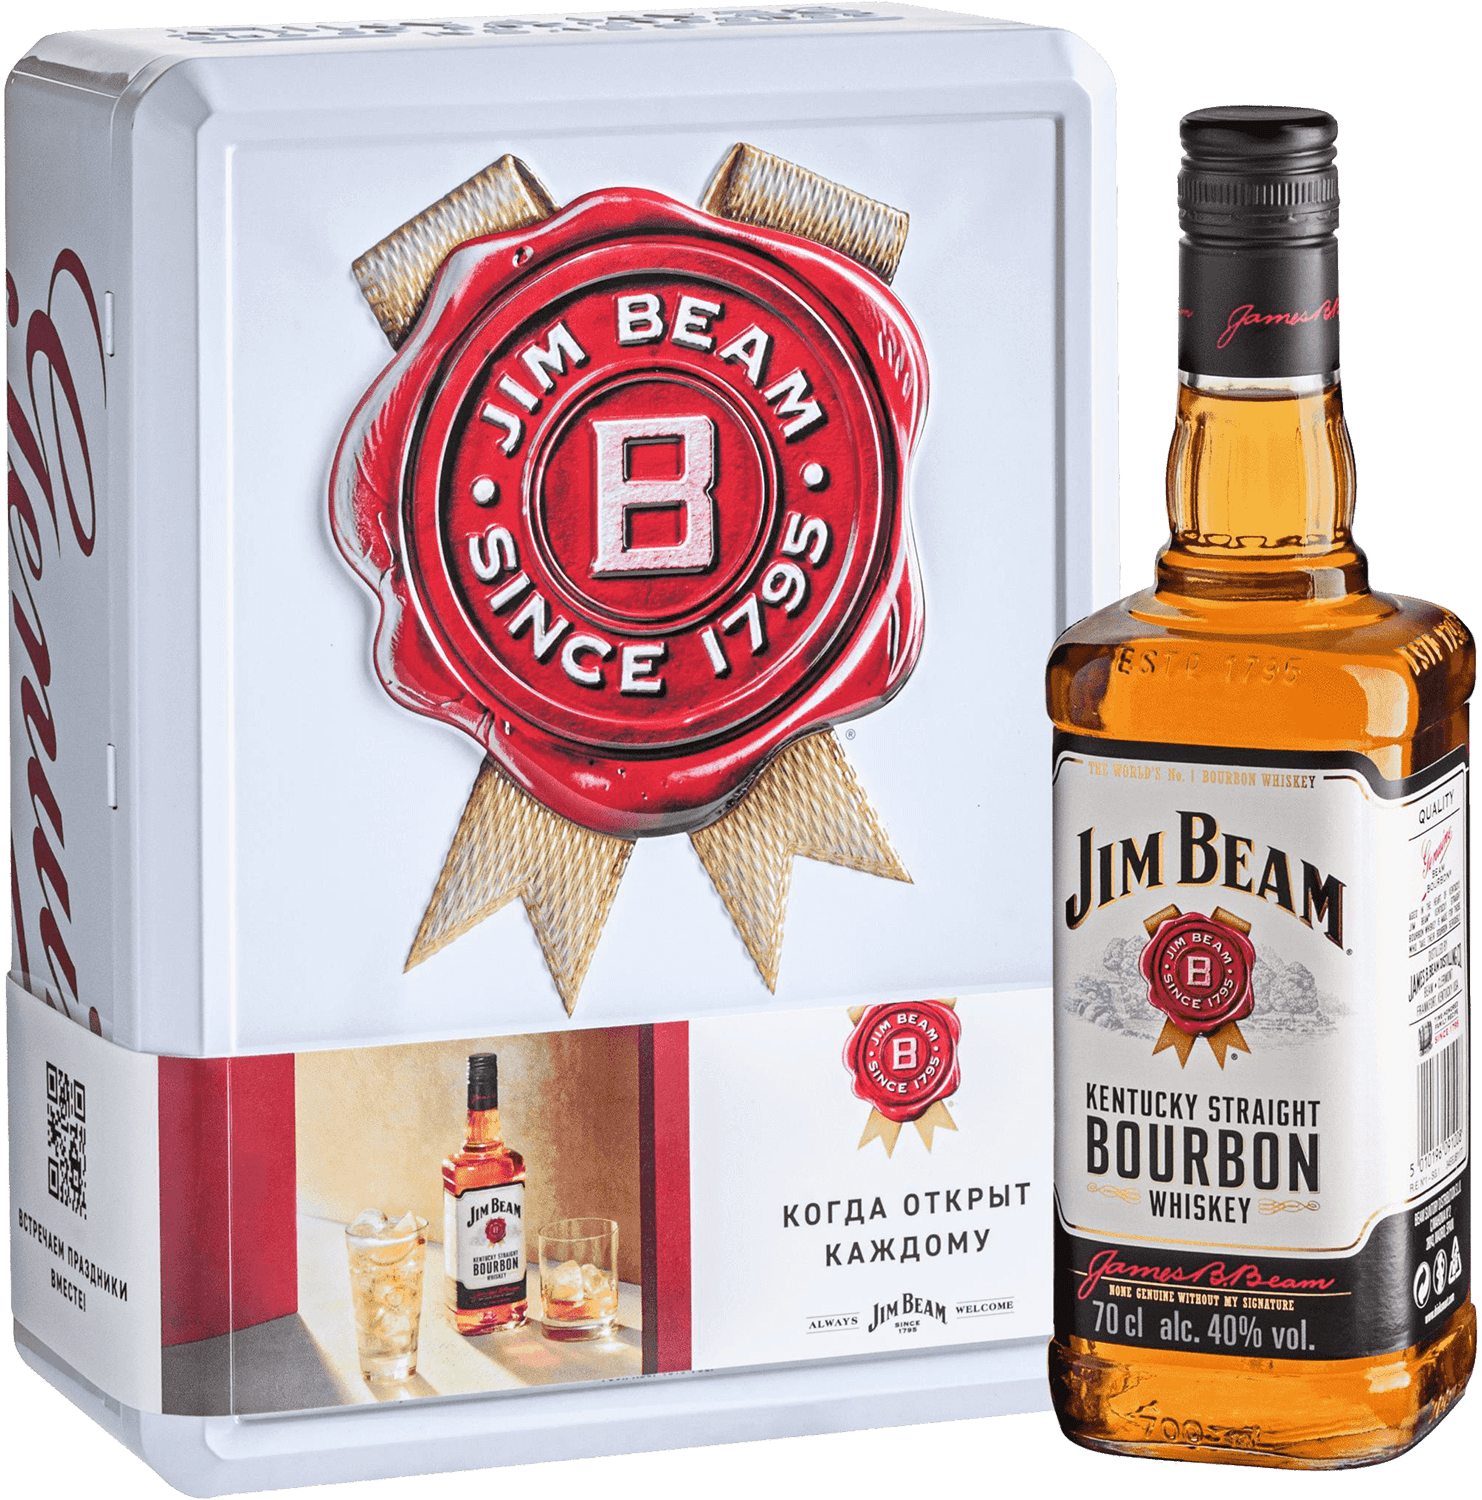 Jim Beam Kentucky Straight Bourbon Whiskey (gift box with 2 glasses) jim beam kentucky straight bourbon whiskey